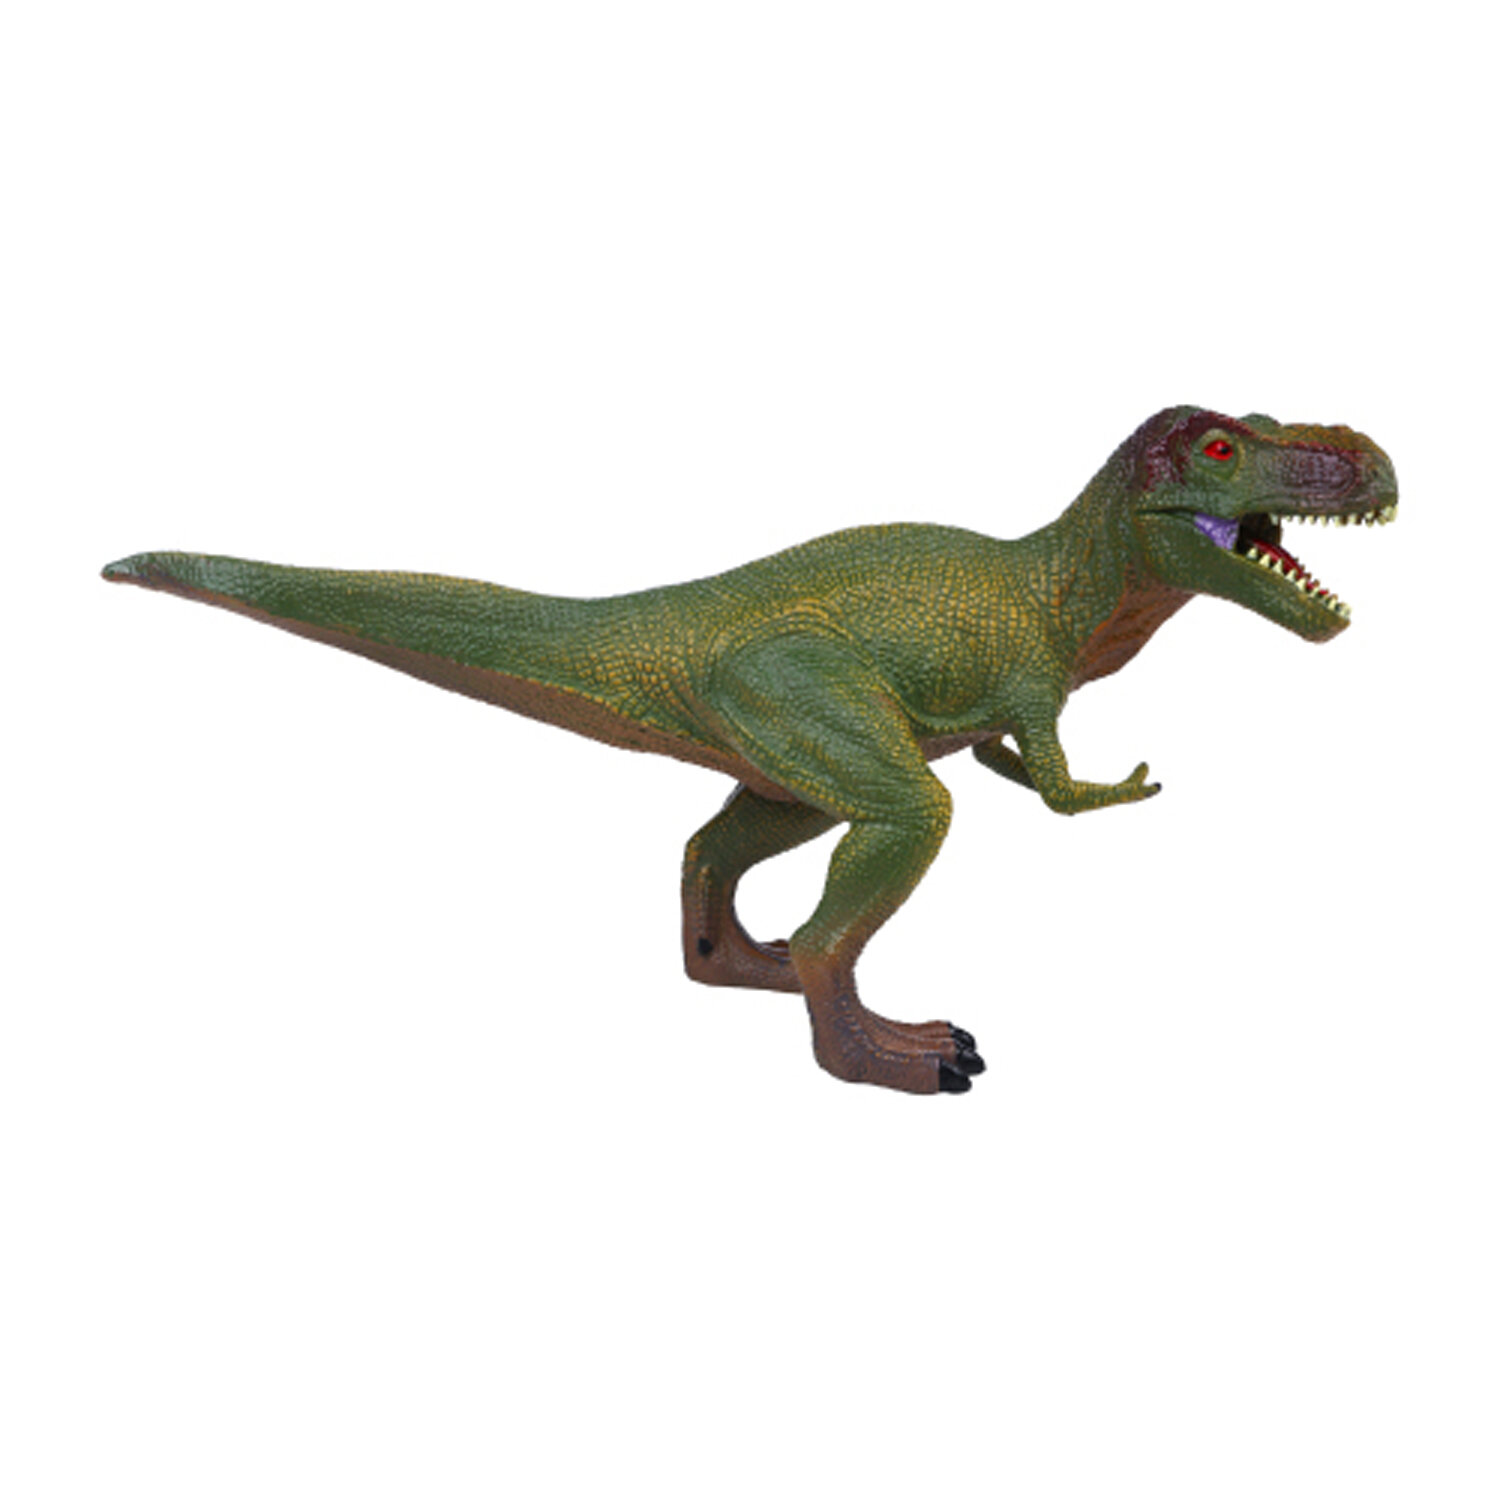 Игрушка динозавр серии "Мир динозавров" - Фигурка Тираннозавр (Тирекс)